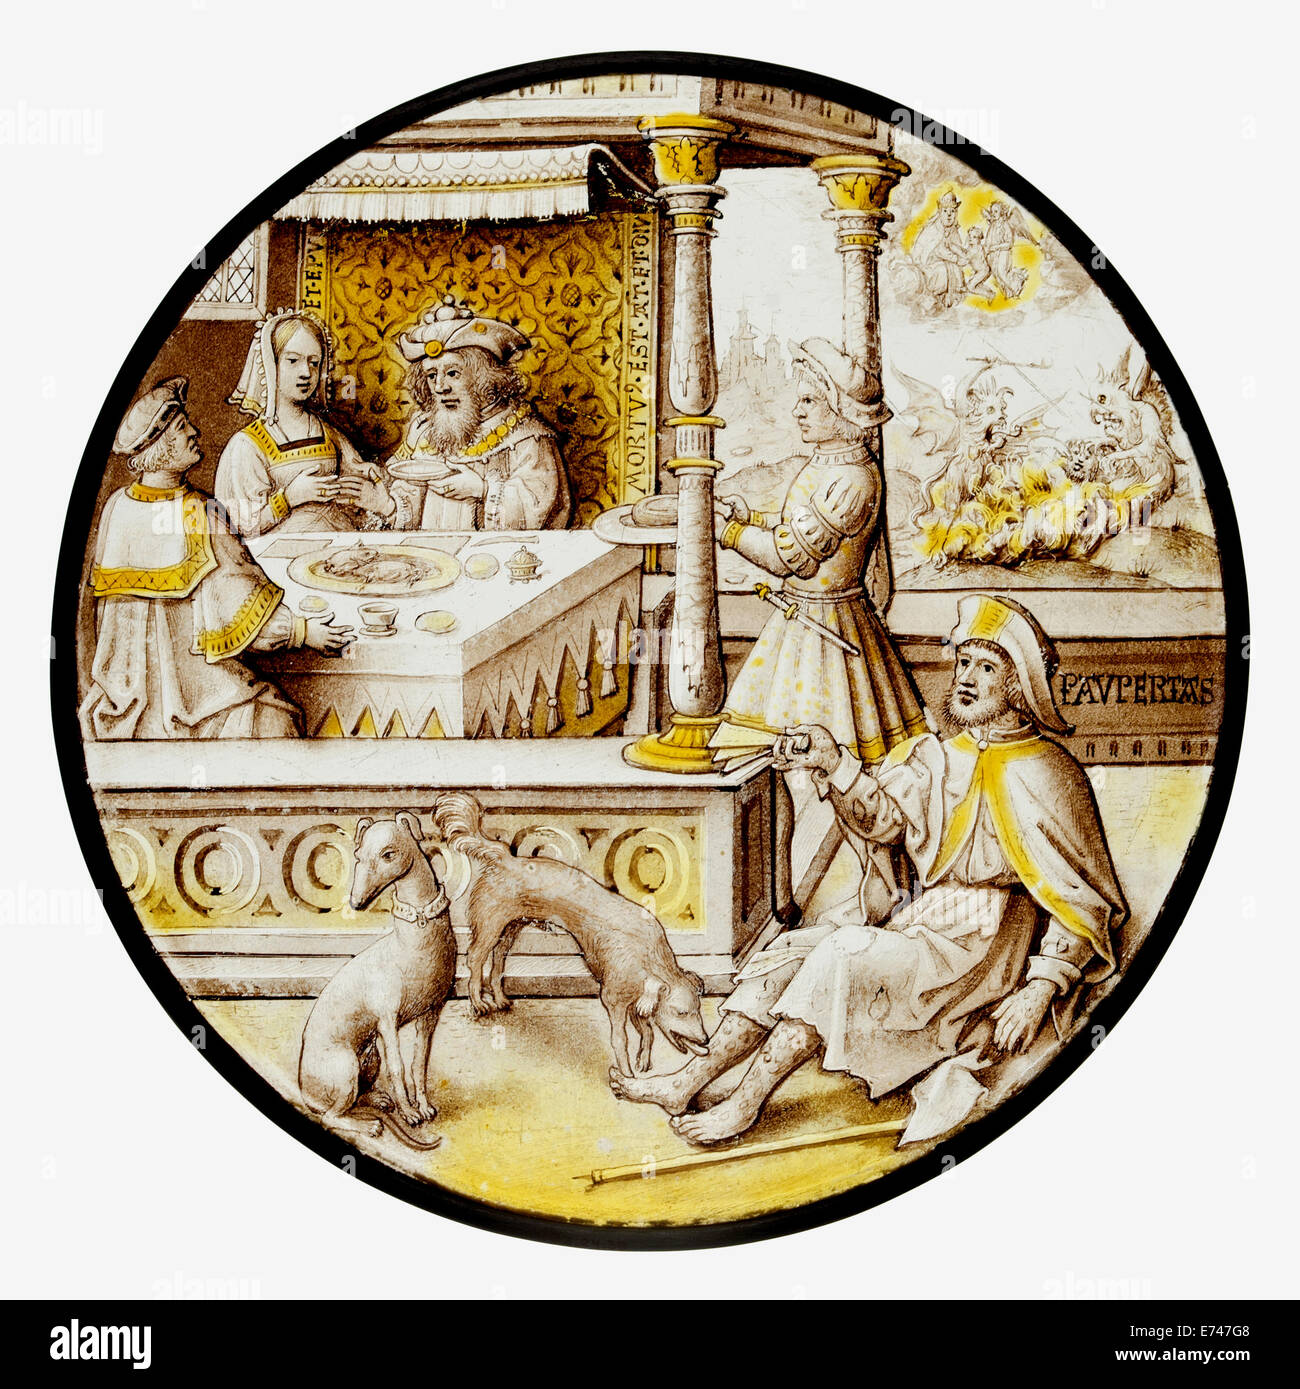 Las vidrieras Roundel con Lázaro en la Casa de inmersiones, 1520 Foto de stock